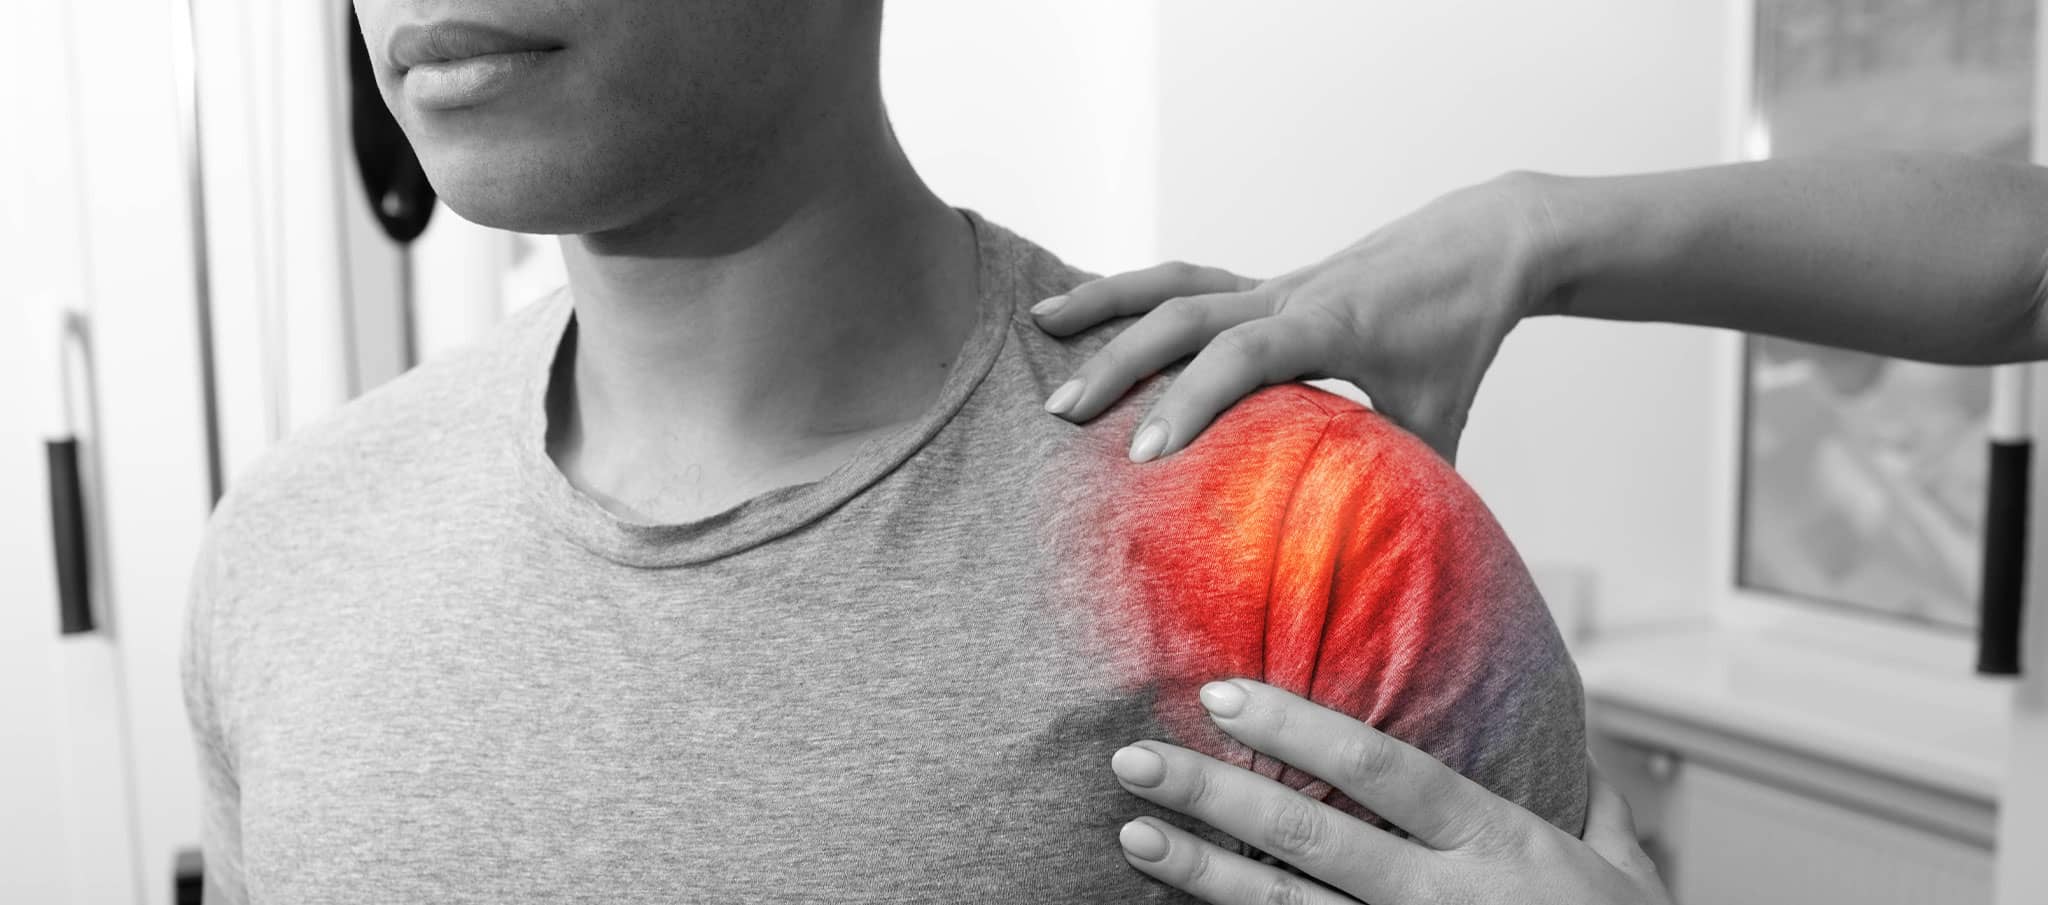 J’ai une douleur à l'épaule à la suite d’un choc : est-ce une fracture ? | Dr Paillard | Paris